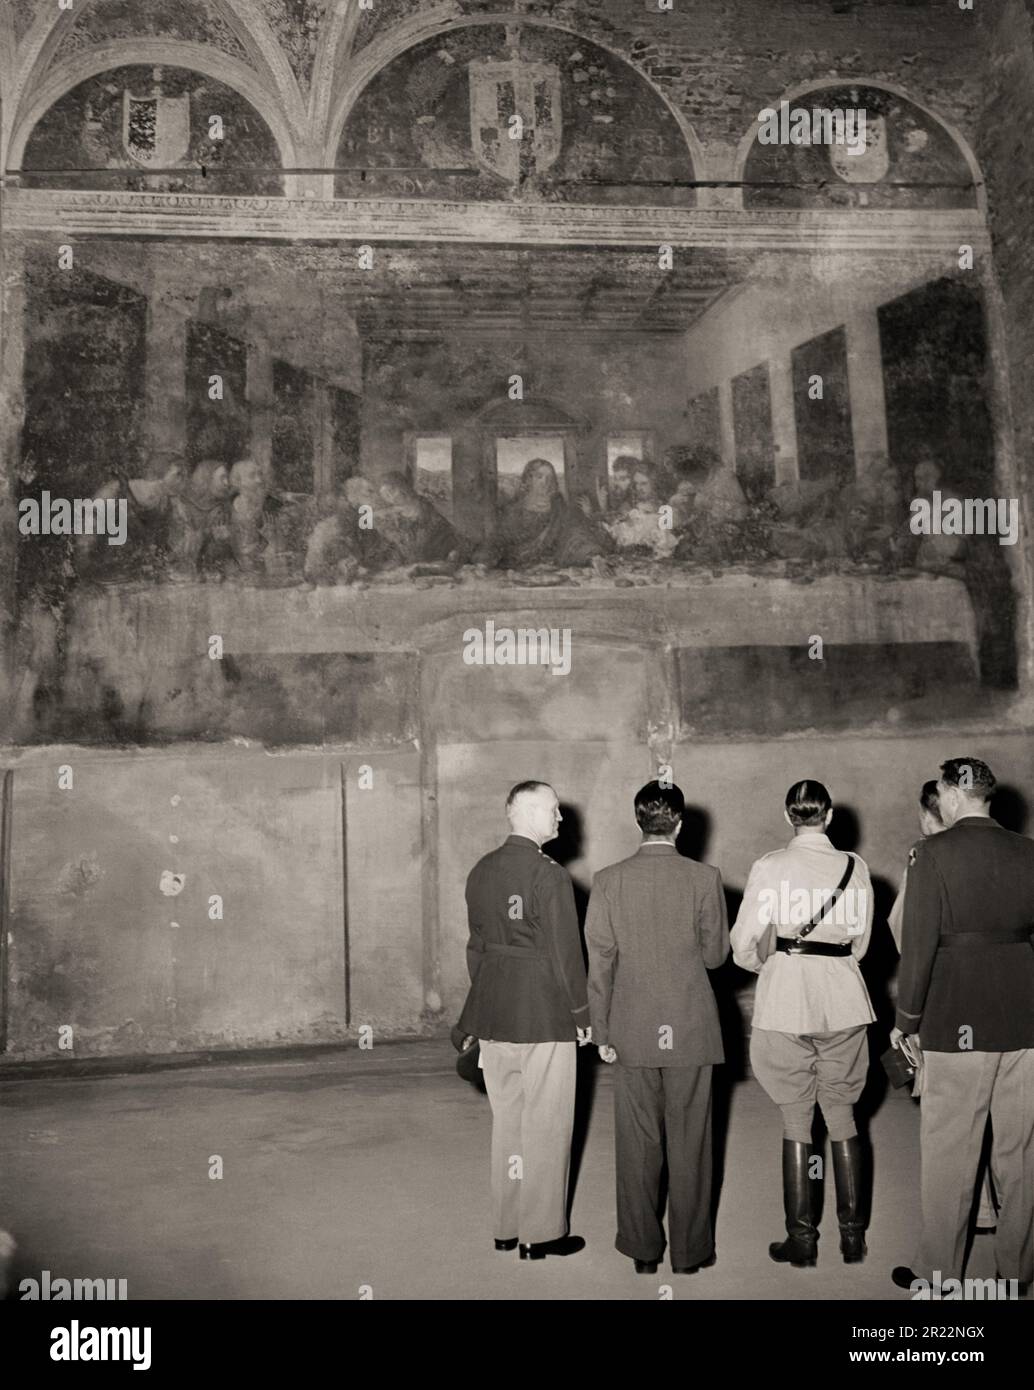 1945 , 25 juin , MILAN , ITALIE : au dernier des jours de la Seconde Guerre mondiale . Des officiers américains et britanniques regardant le chef-d'œuvre de LÉONARD de VINCI ' la Cène '( l'ULTIMA CENA ) dans l'église de Santa Maria Delle Grazie , Milan . Épargné et intact par la guerre. Miraculeusement survécu à un bombardement allié ( seul le mur avec la fresque est resté indemne dans les décombres , tandis que tout le couvent de la Madonna delle Grazie a été rasé au sol ). La célèbre fresque de Léonard de Vinci est vue par le maréchal britannique Sir HAROLD R.L.G. ALEXANDER ( portant la ceinture Sam Browne - Rupert Leofric George , 189 Banque D'Images